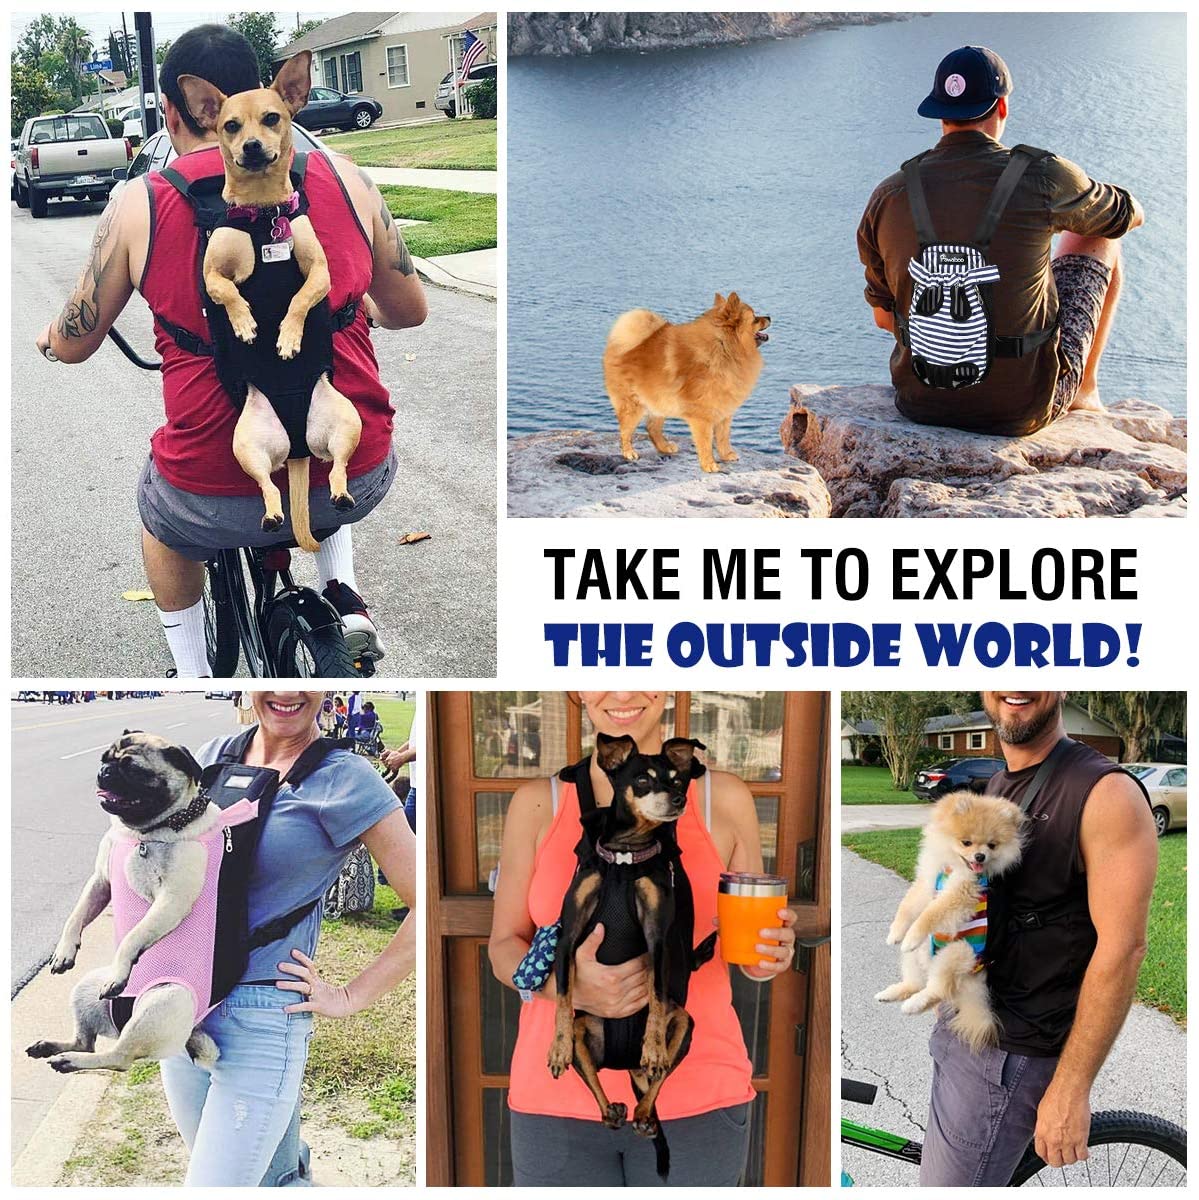  Pawaboo Mochila del Perro - Adjustable Bolsa Delantera Pet Front Cat Dog Carrier Backpack/Piernas Afuera & Fácil de Ajustar para Viajar/Senderismo/Camping, Talla M - Camuflaje 